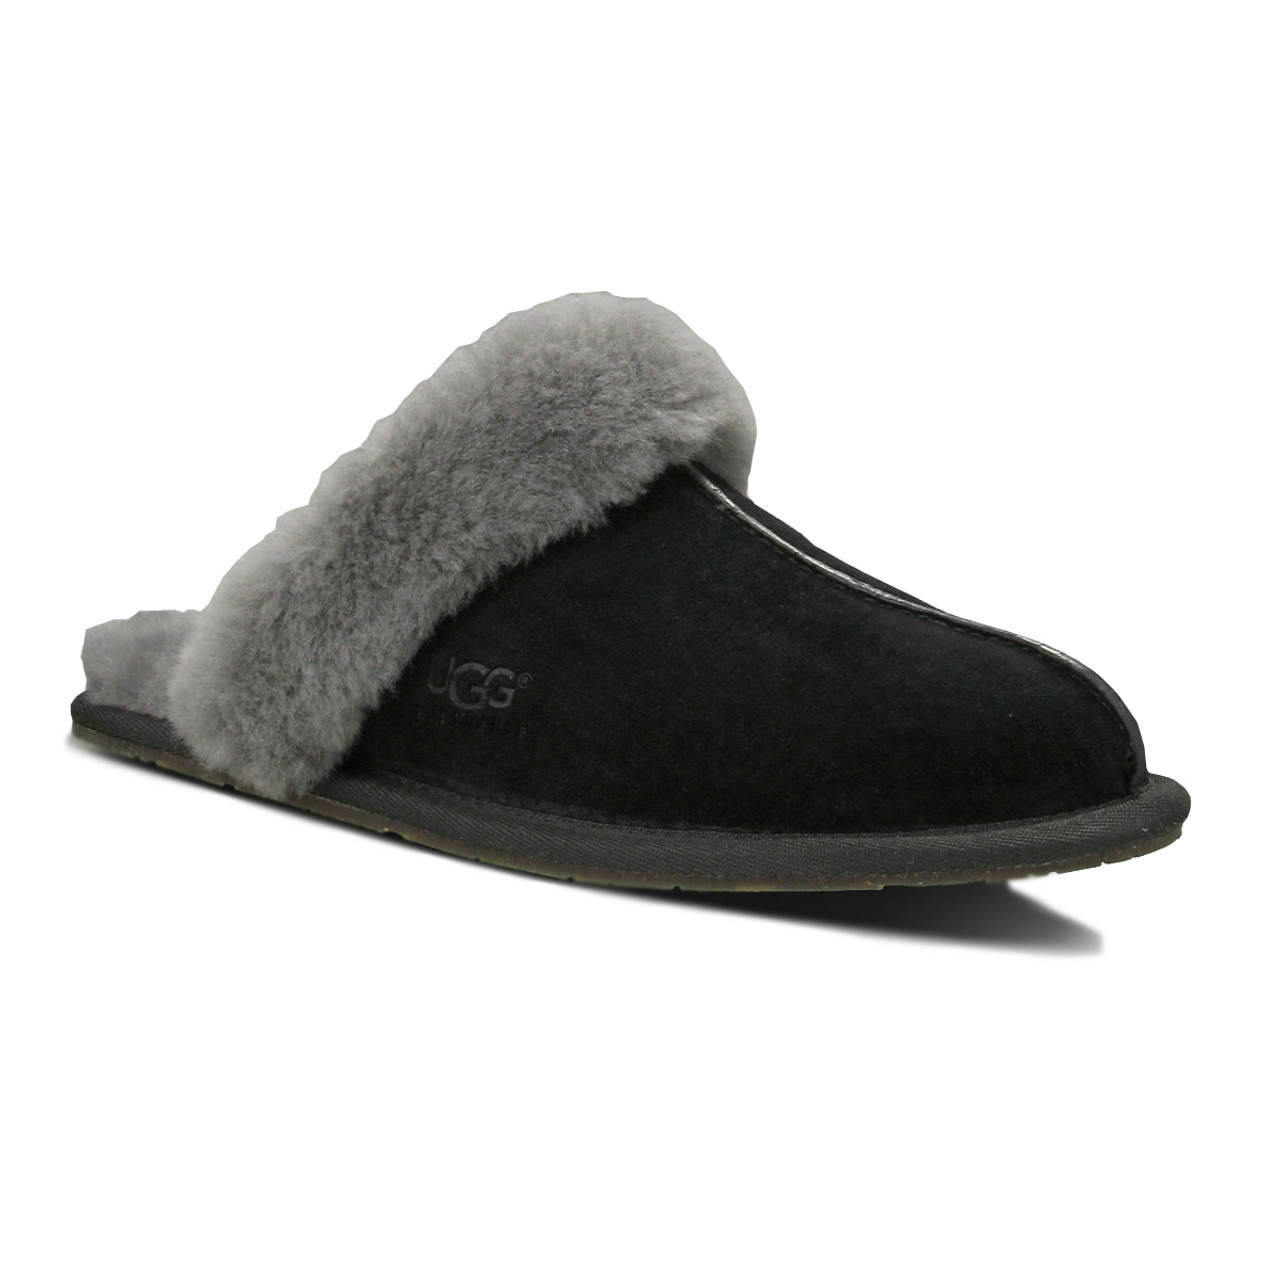 ugg scuffette ii sheepskin slippers